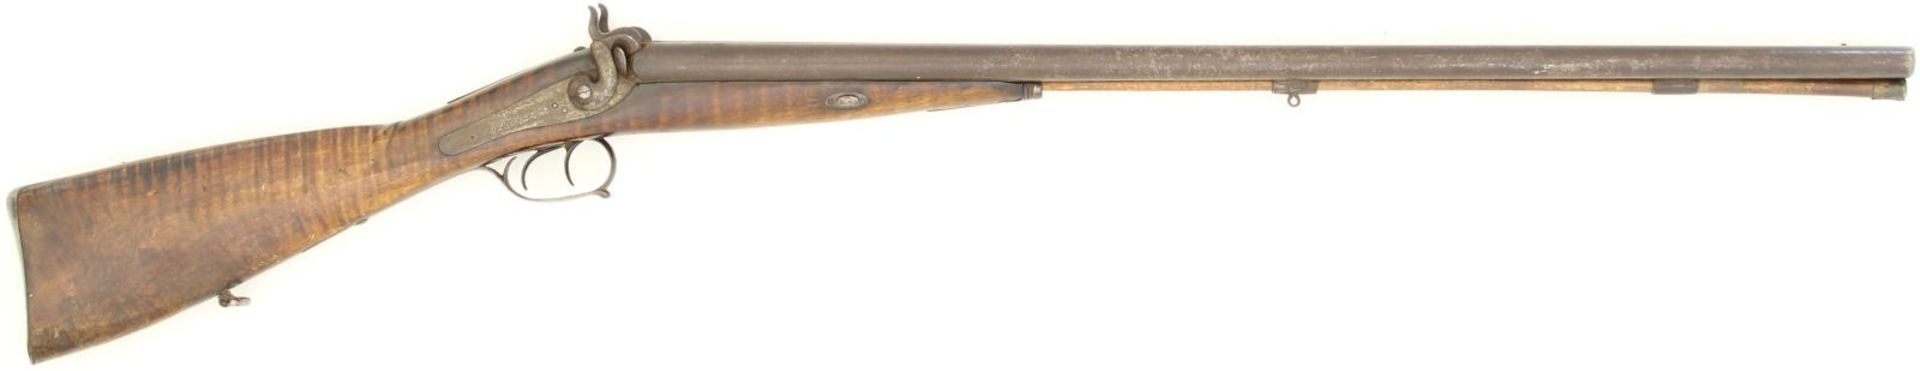 Perkussionsgewehr, Doppelflinte, Schlossblech beschriftet mit: "Menteler Zug". Lauflänge 76cm, stark